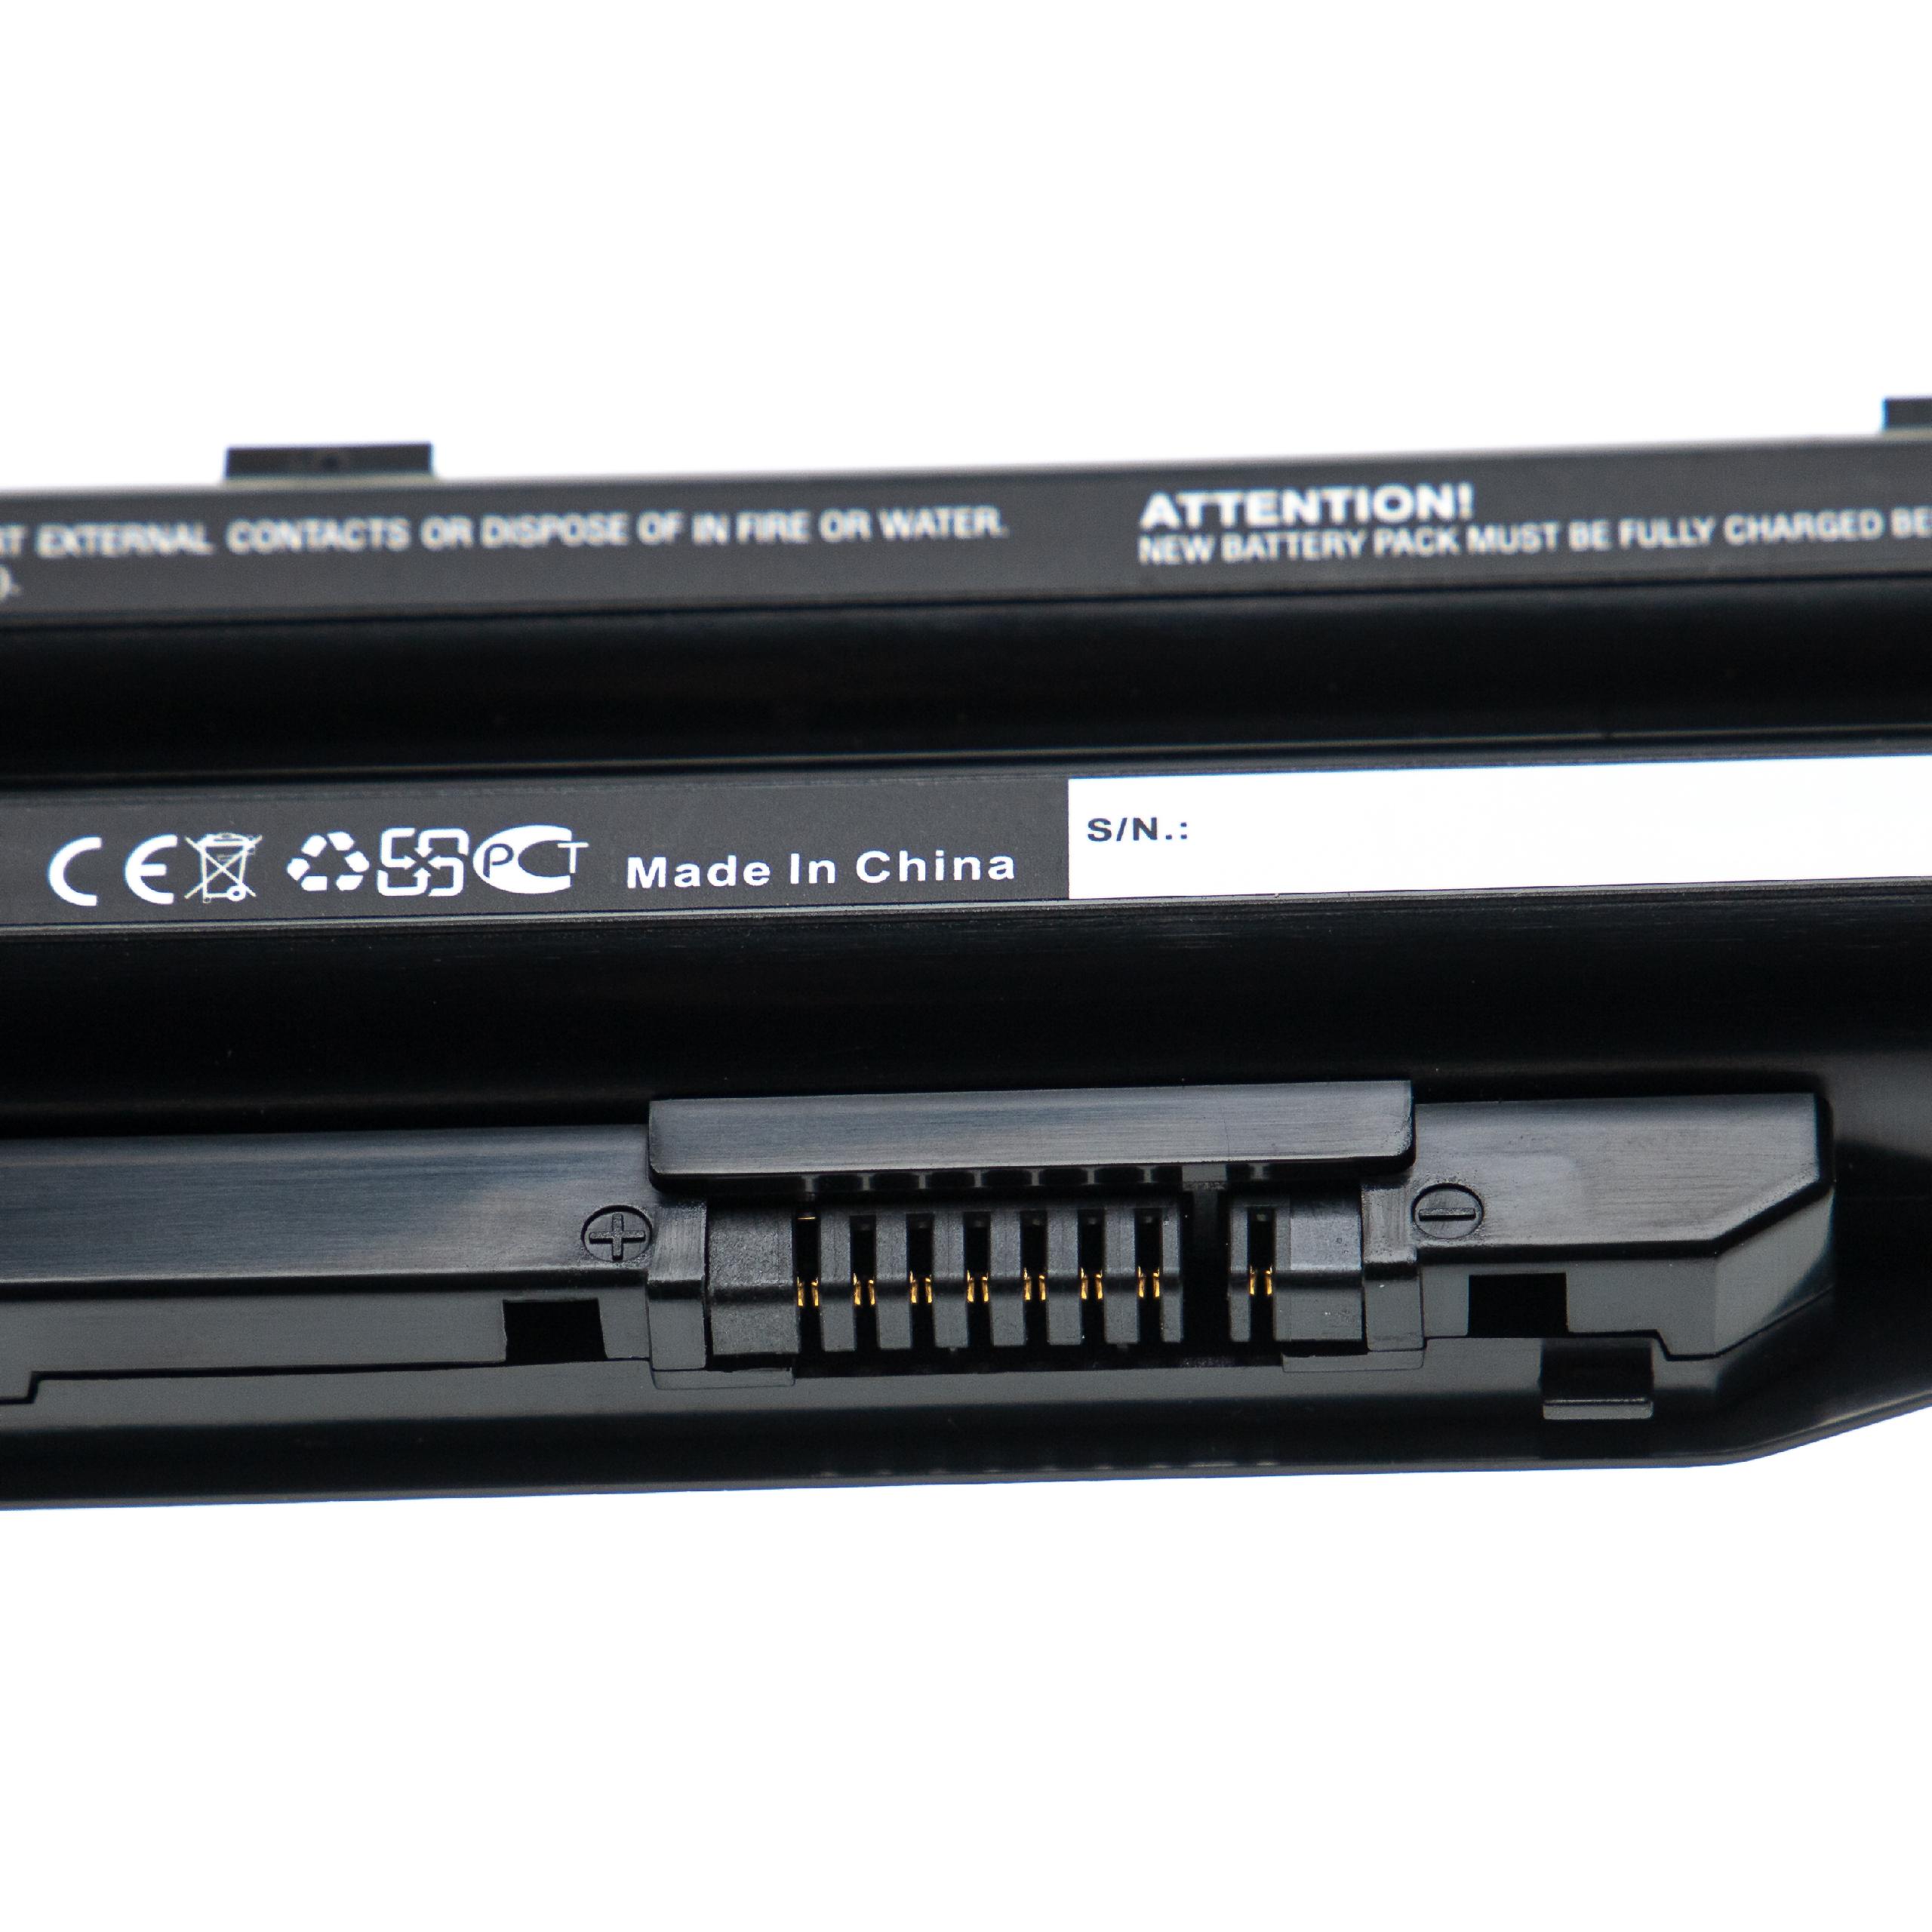 Batterie remplace Fujitsu FMVNBP227A, BPS231, BPS229 pour ordinateur portable - 2000mAh 10,8V Li-ion, noir